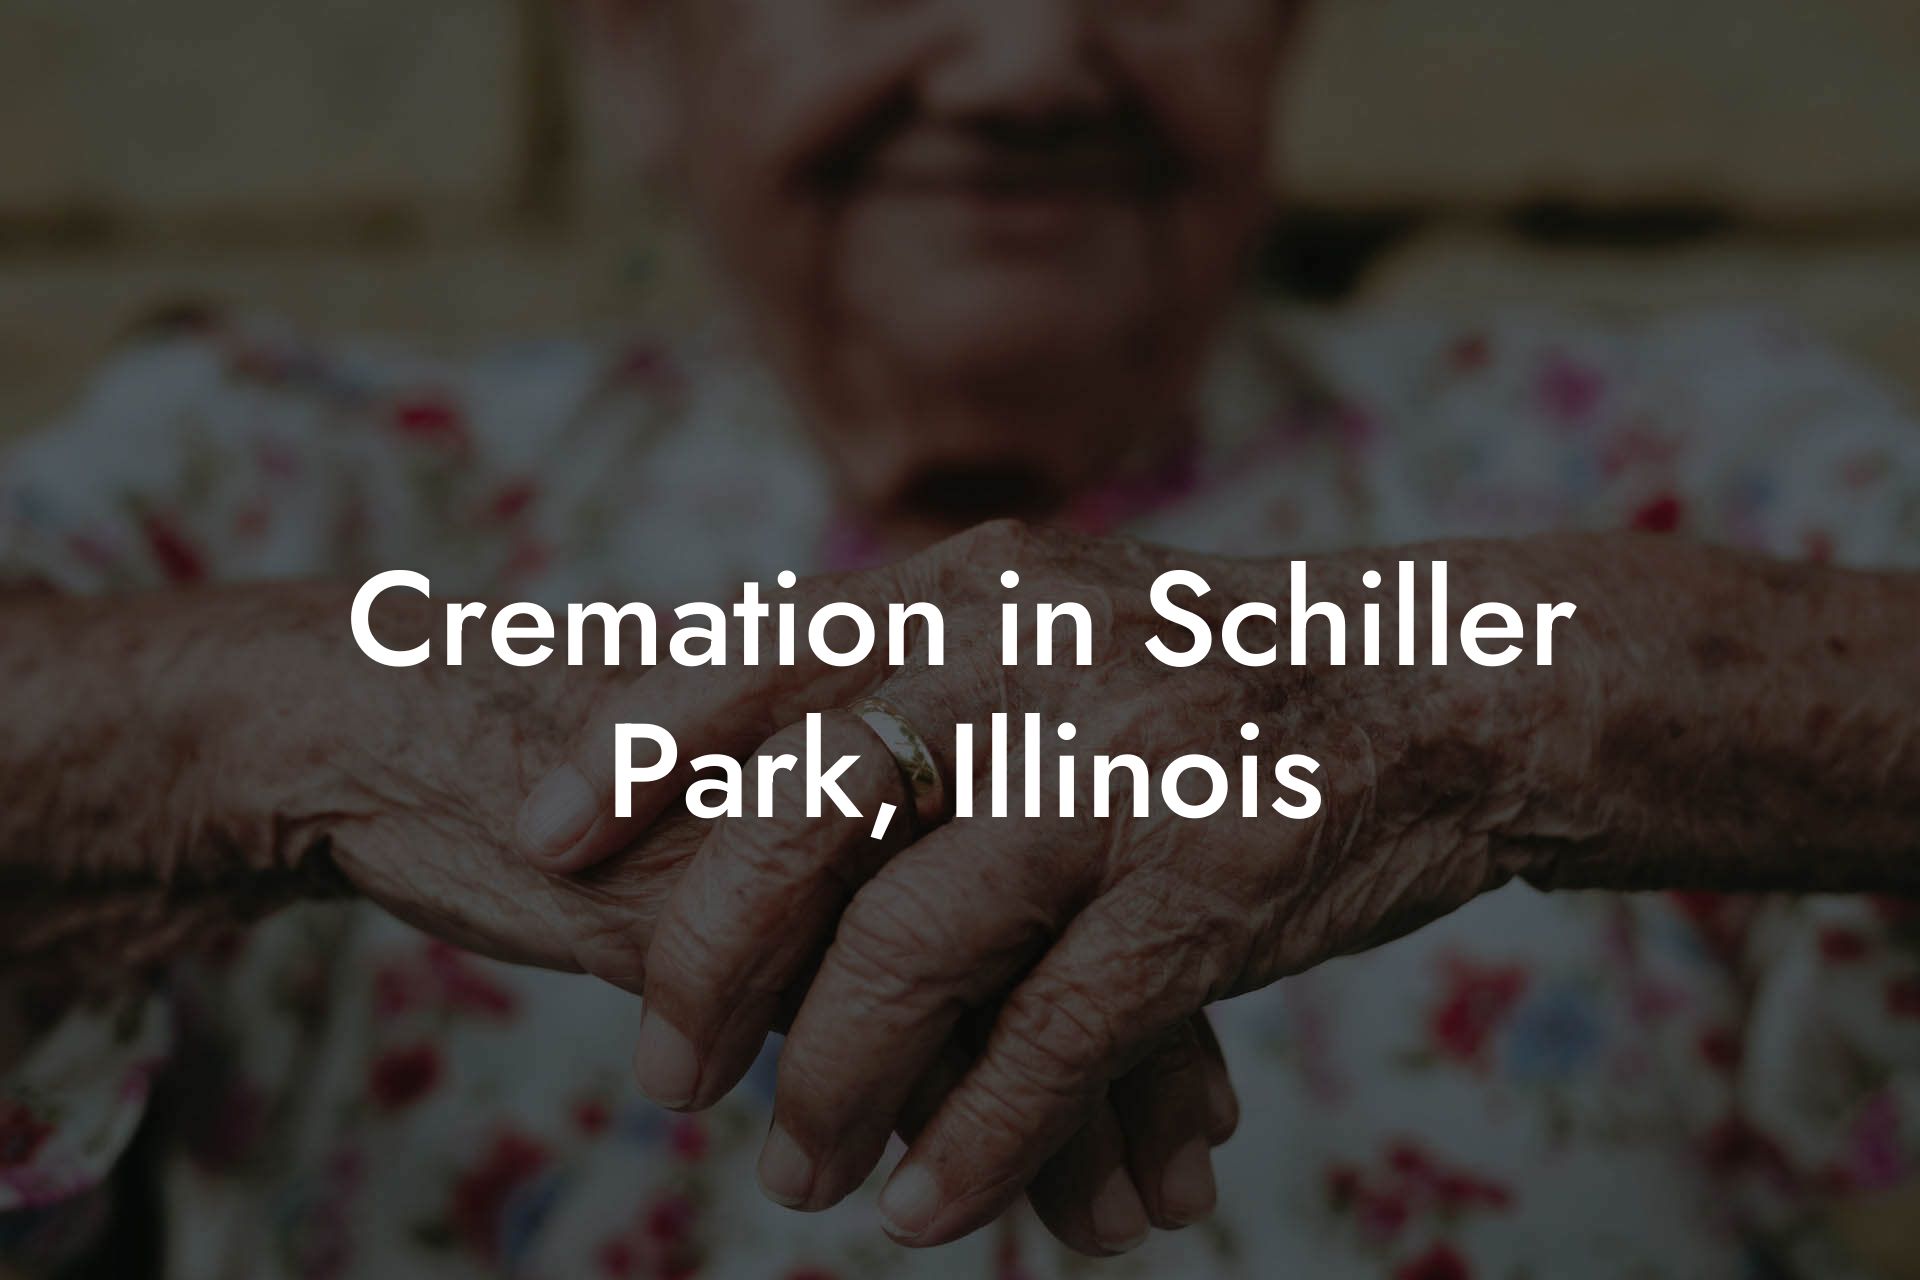 Cremation in Schiller Park, Illinois